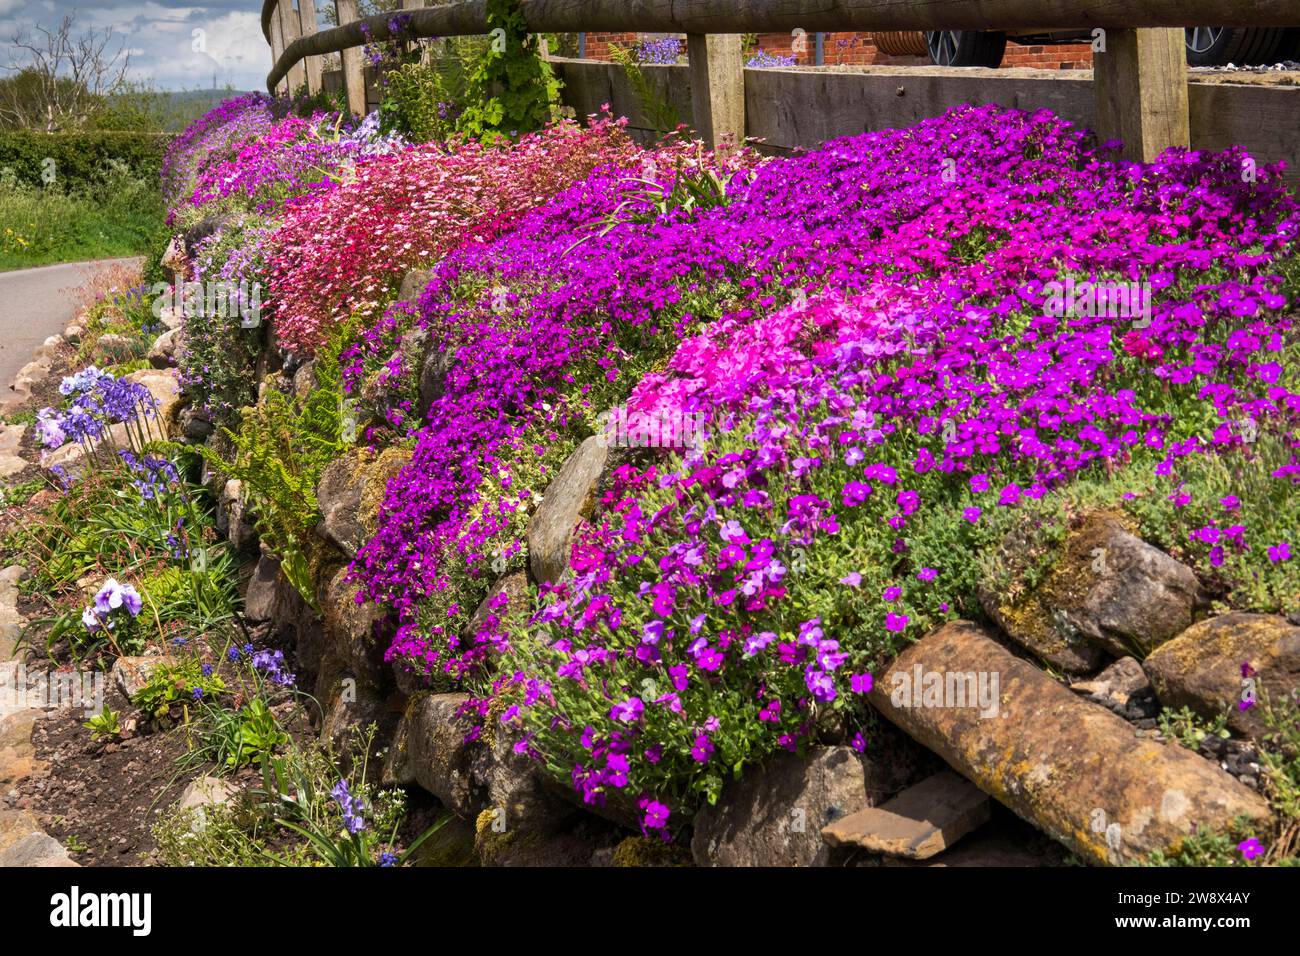 Royaume-Uni, Angleterre, Cheshire, Congleton, Puddle Bank Lane, fleurs colorées roses, violettes et rouges du début de l'été dans le mur de délimitation du jardin Banque D'Images